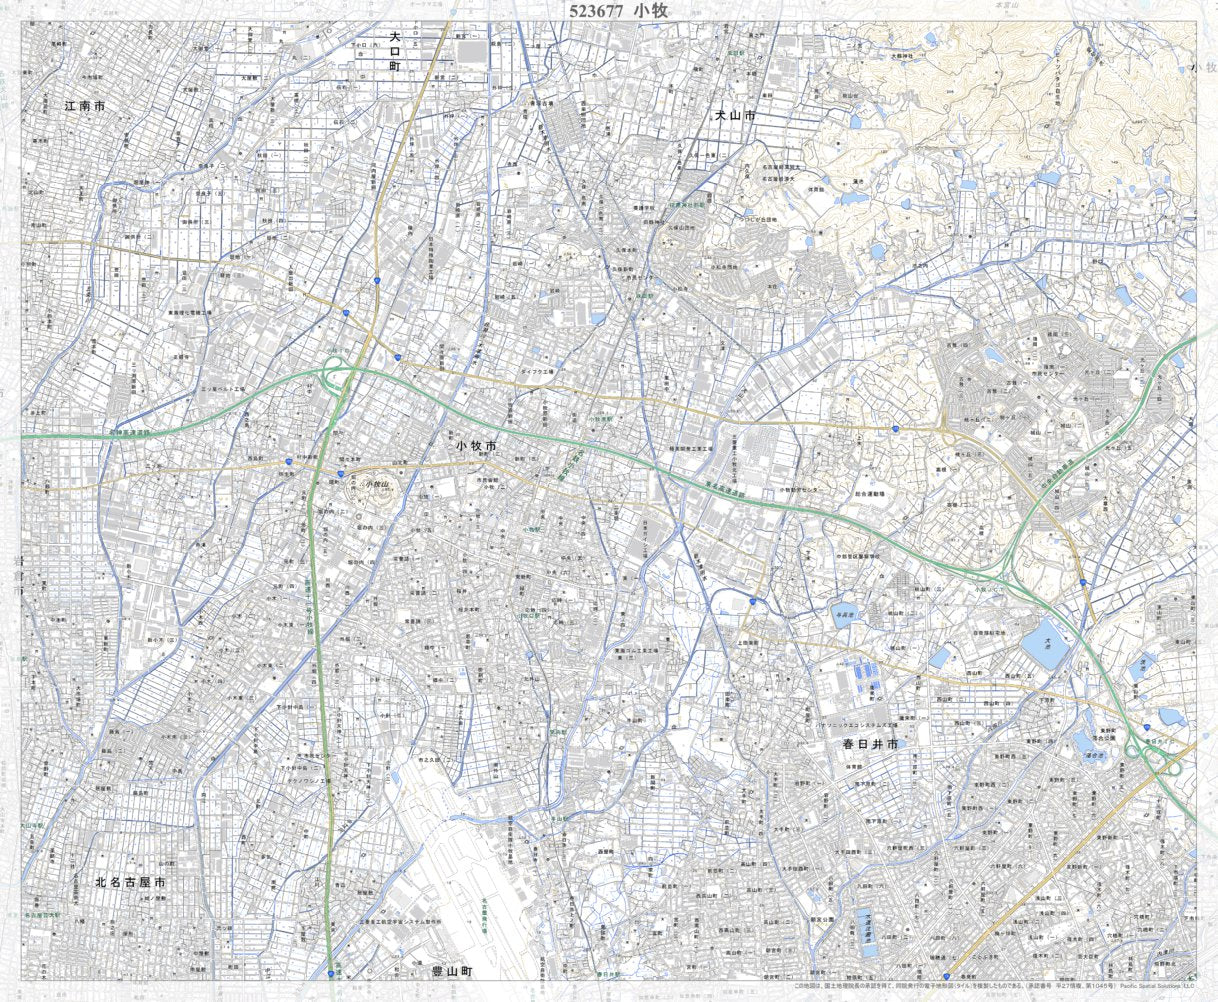 523677 小牧 （こまき Komaki）, 地形図 Map by Pacific Spatial 